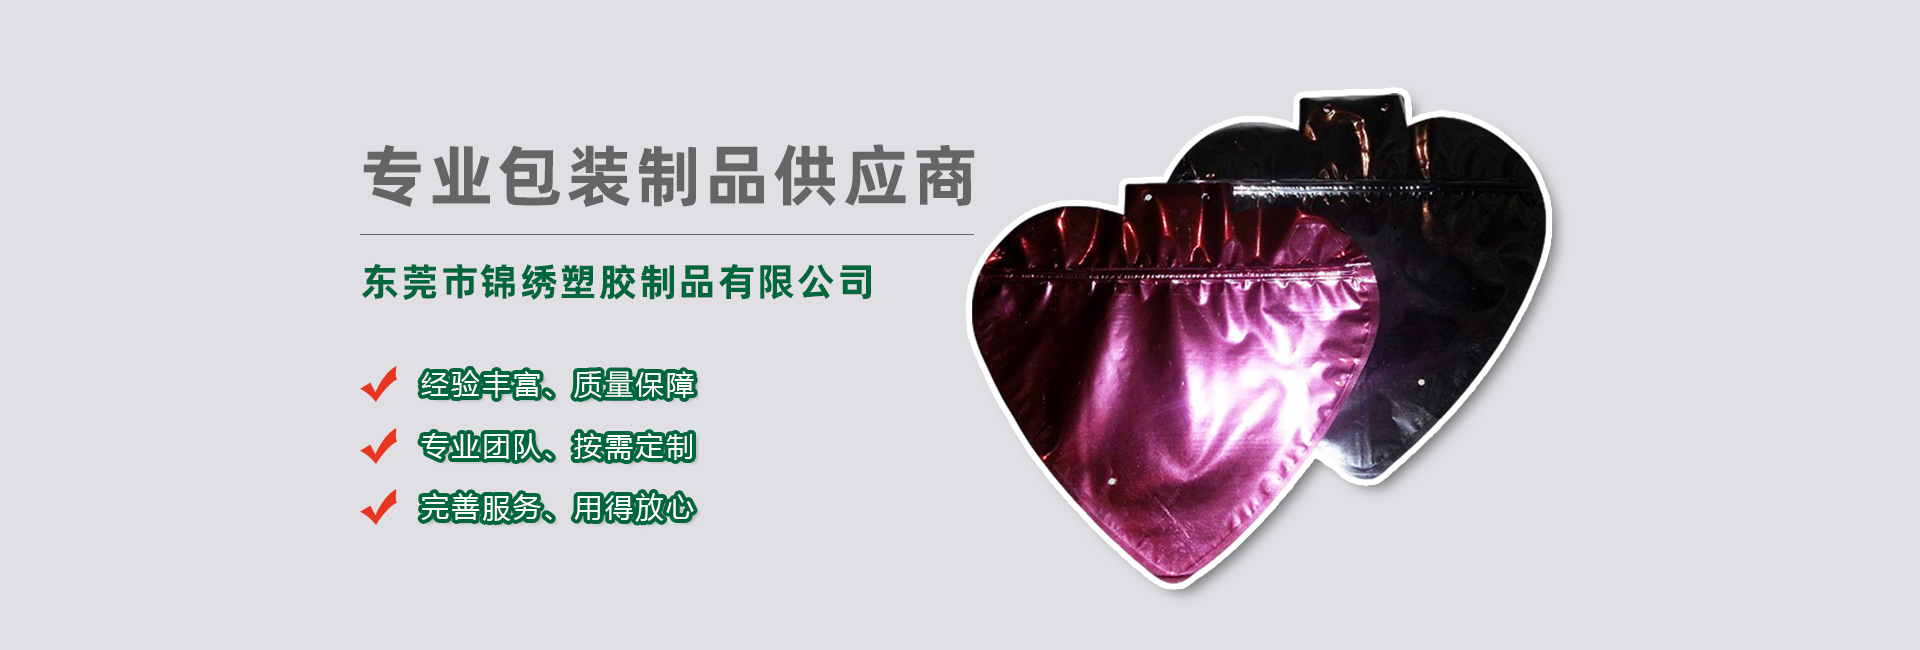 广东食品袋banner